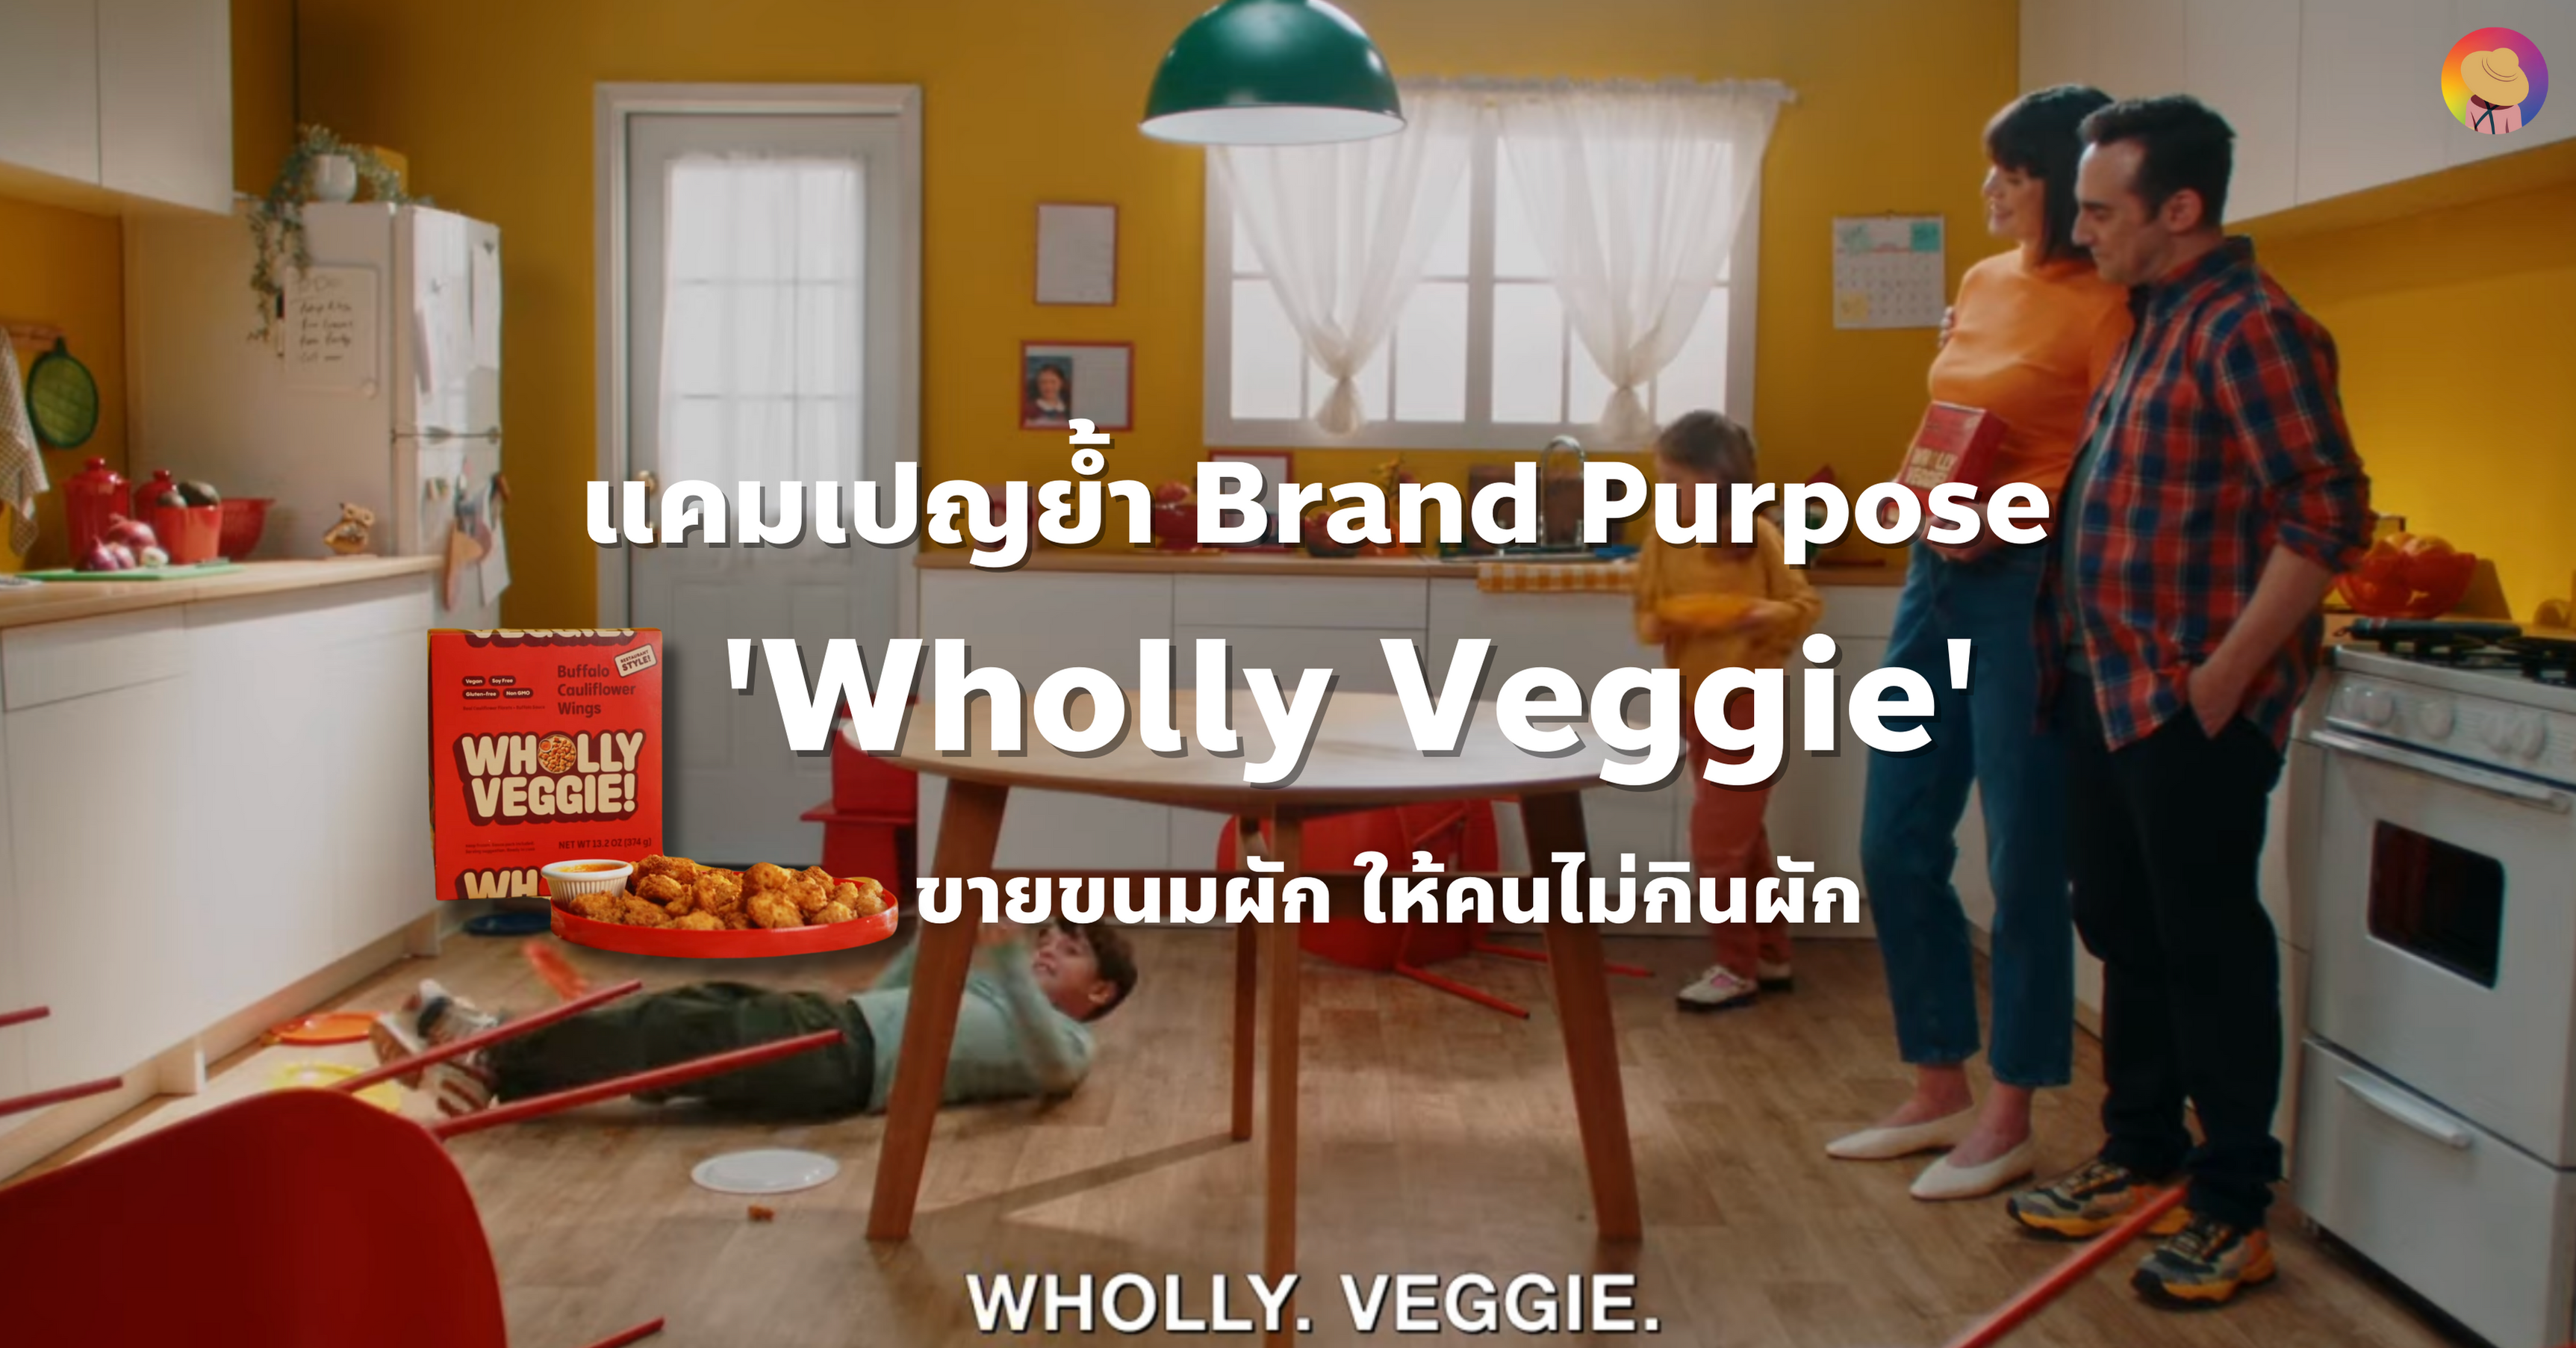 แคมเปญย้ำ Brand Purpose Wholly Veggie ขายขนมผัก ให้คนไม่กินผัก